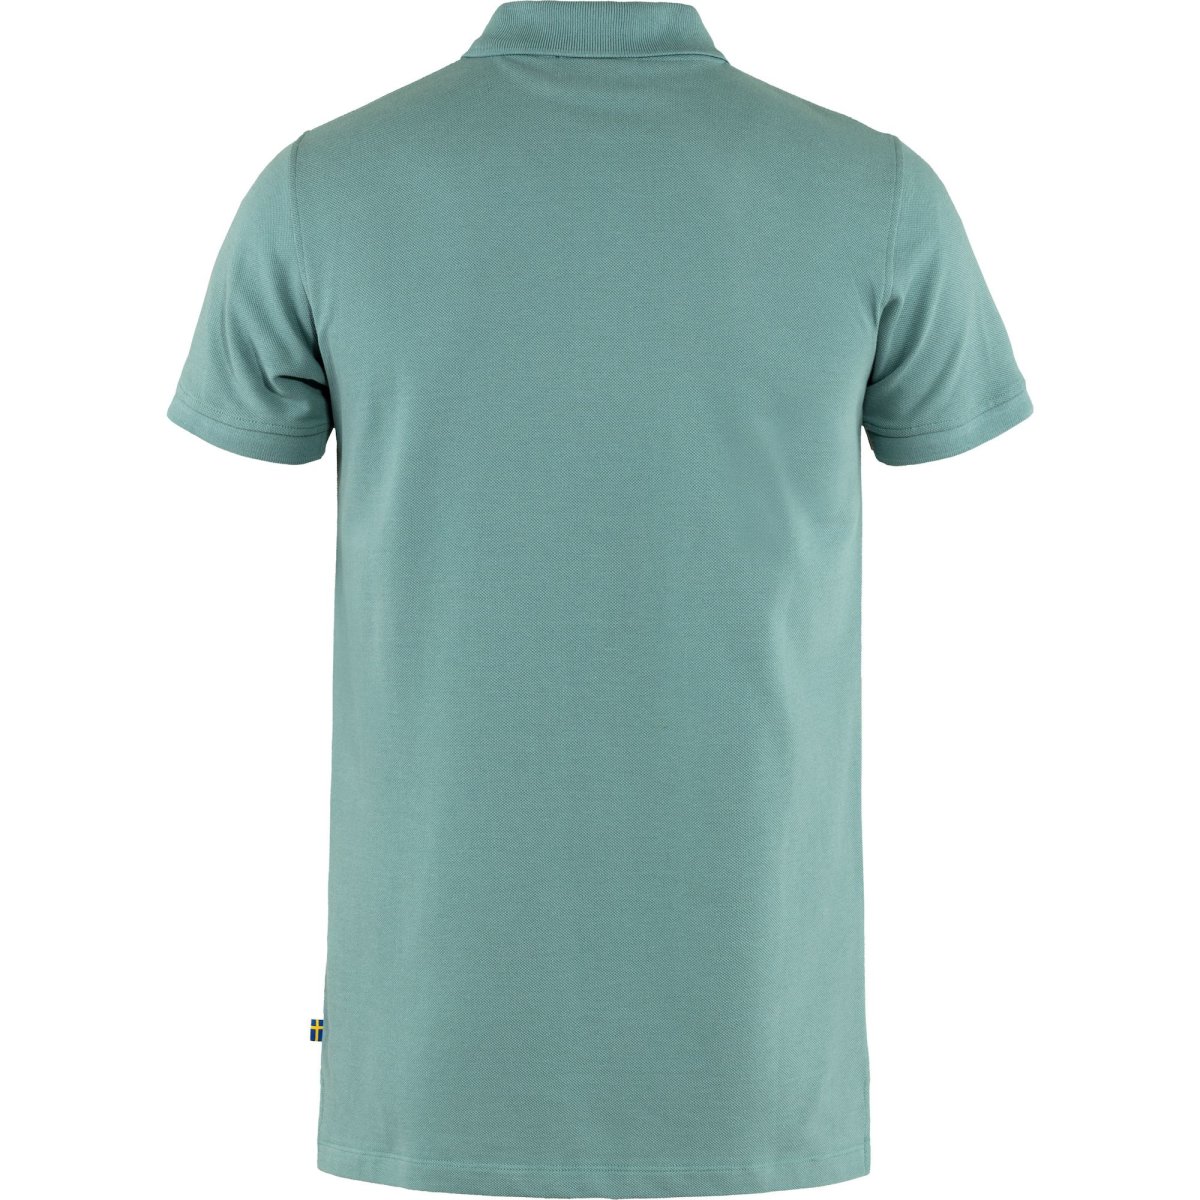 Fj&auml;llr&auml;ven &Ouml;vik Polo Pique Shirt SS 81511 clay blue  Herren Polohemd   Shirt